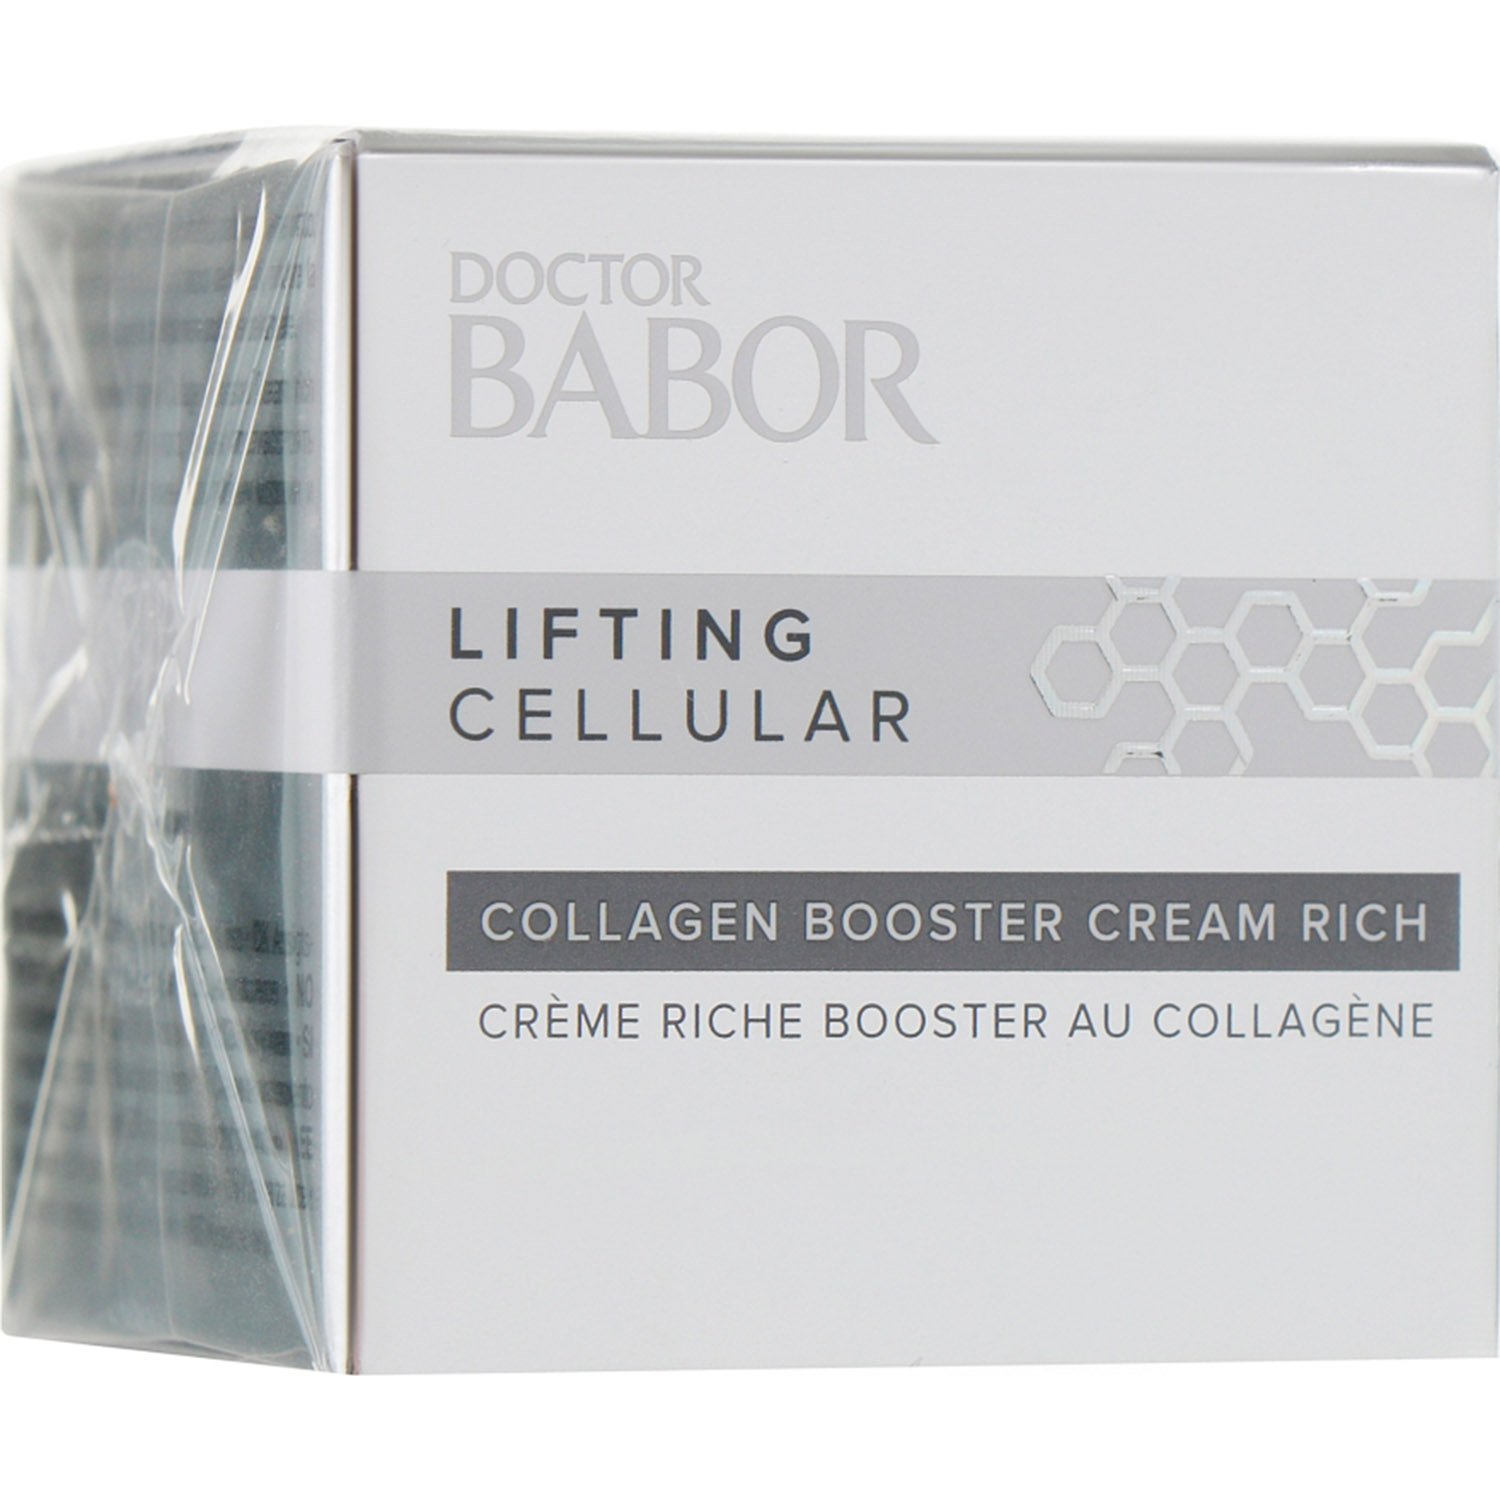 Крем-бустер для обличчя Babor Doctor Babor Lifting Cellular Collagen Booster Cream, 50 мл - фото 2